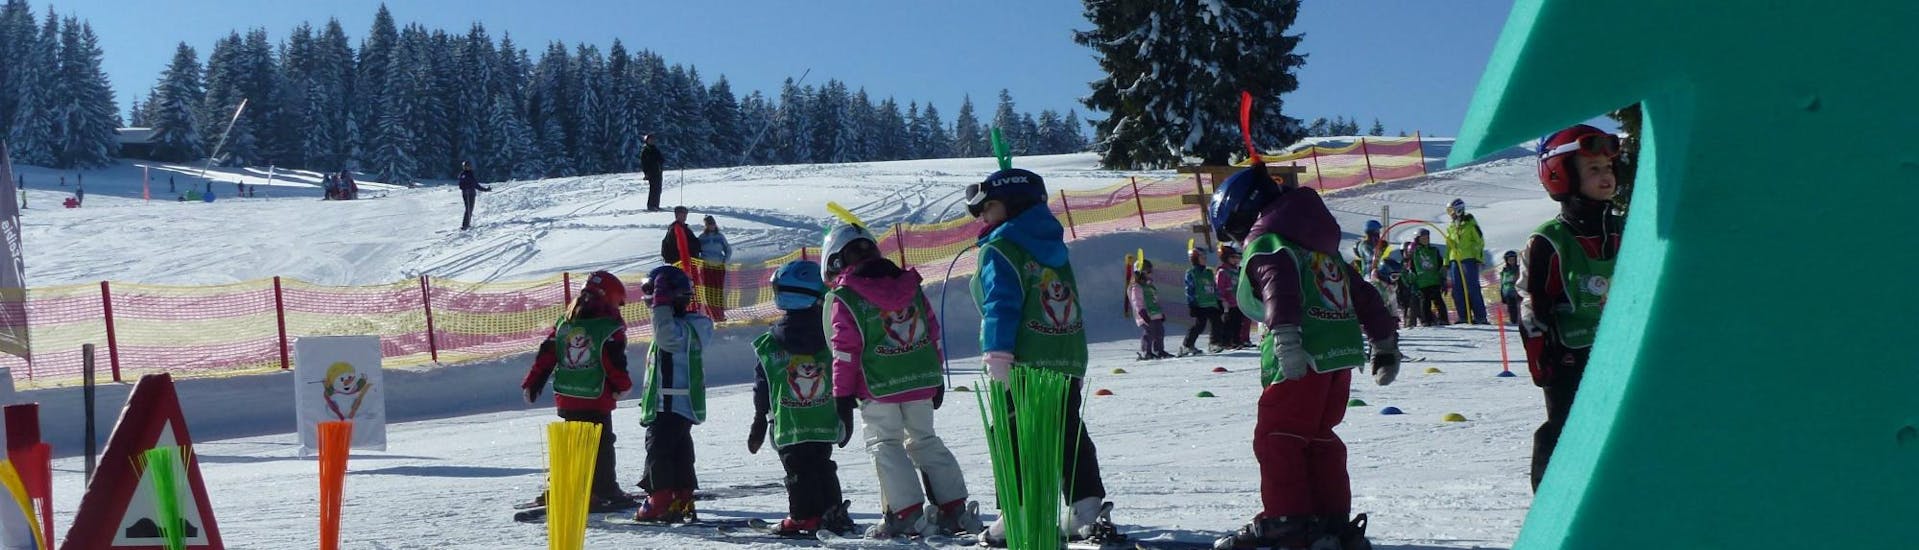 Clases de esquí para niños a partir de 10 años para todos los niveles.